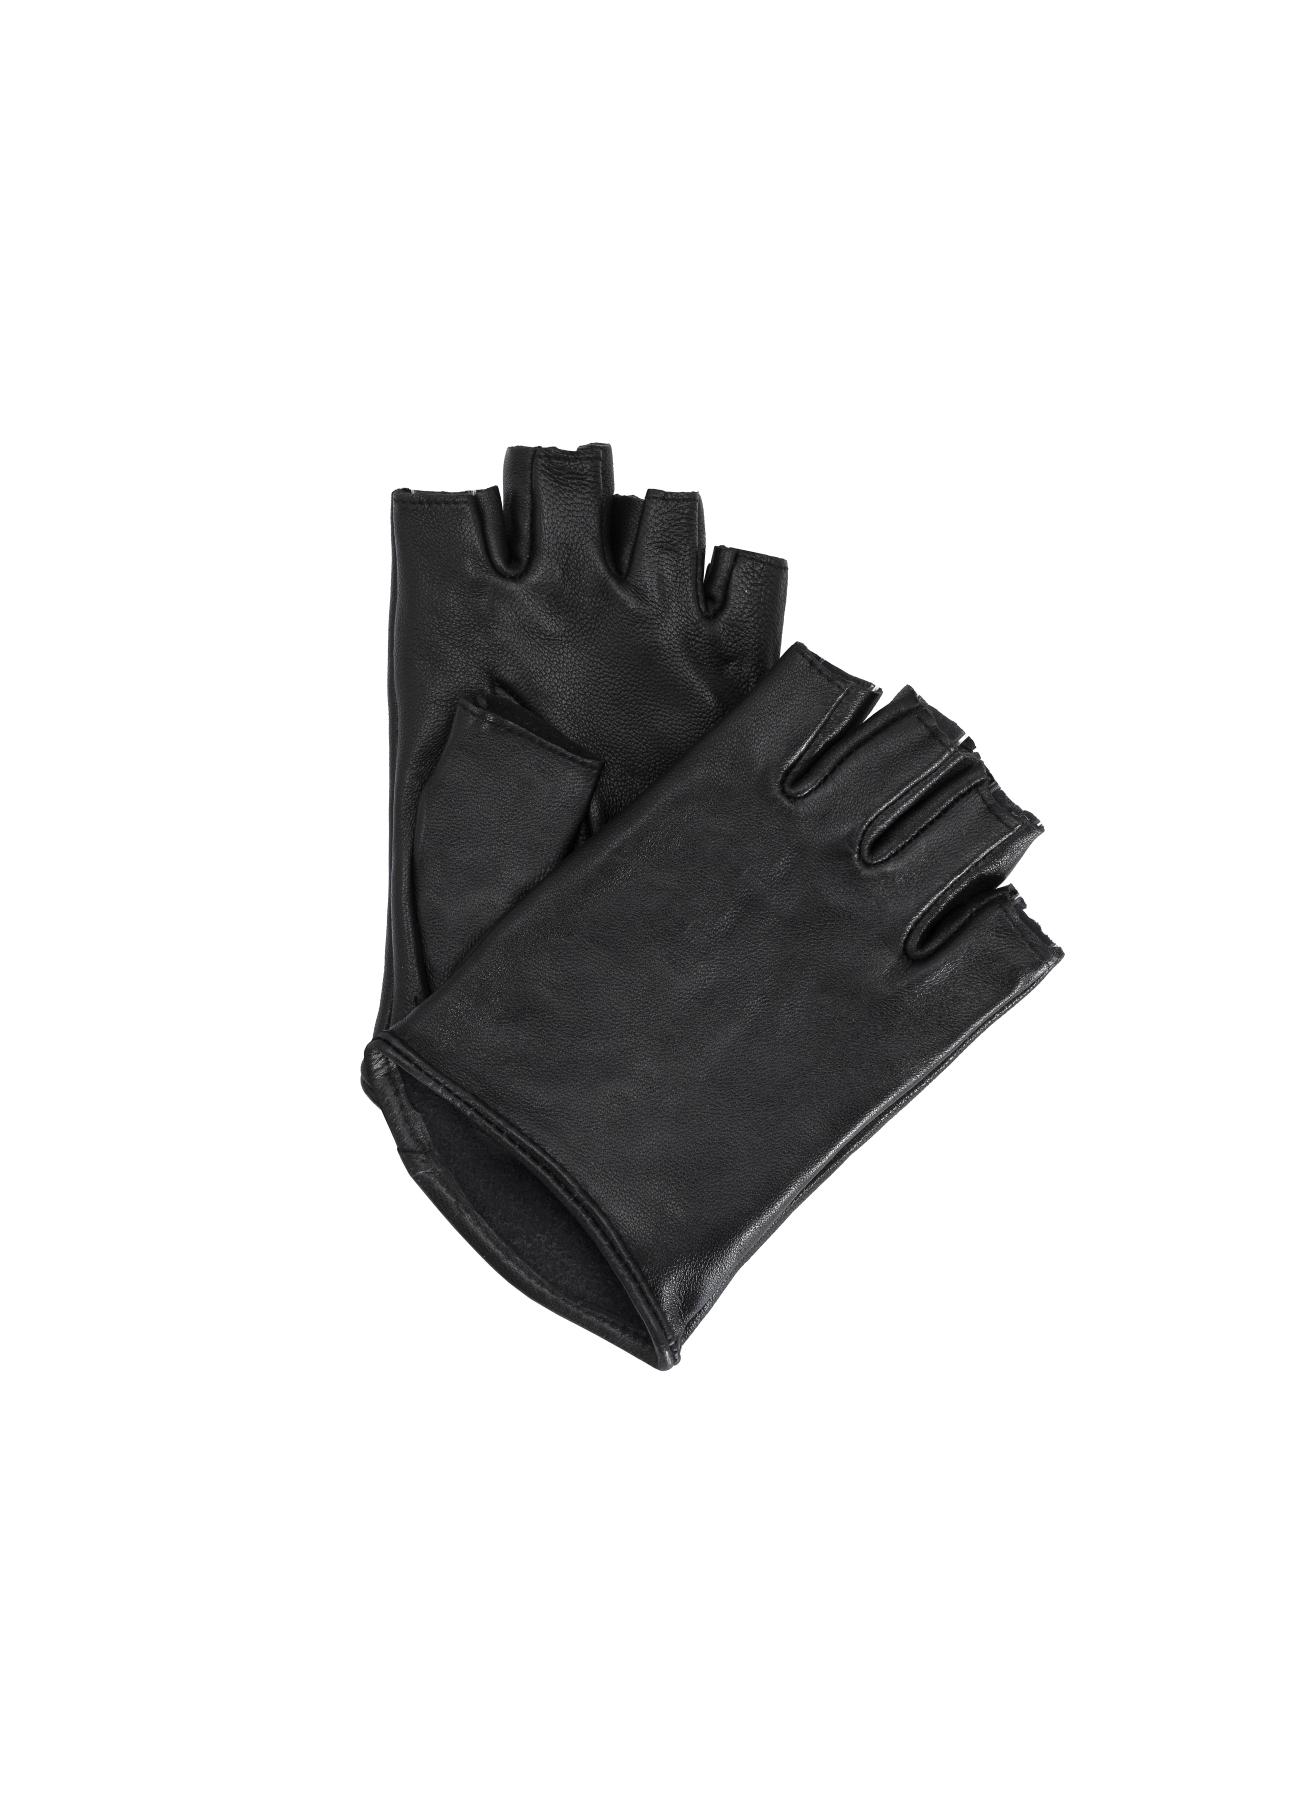 Rękawiczki damskie REKDS-0055-99(Z19)